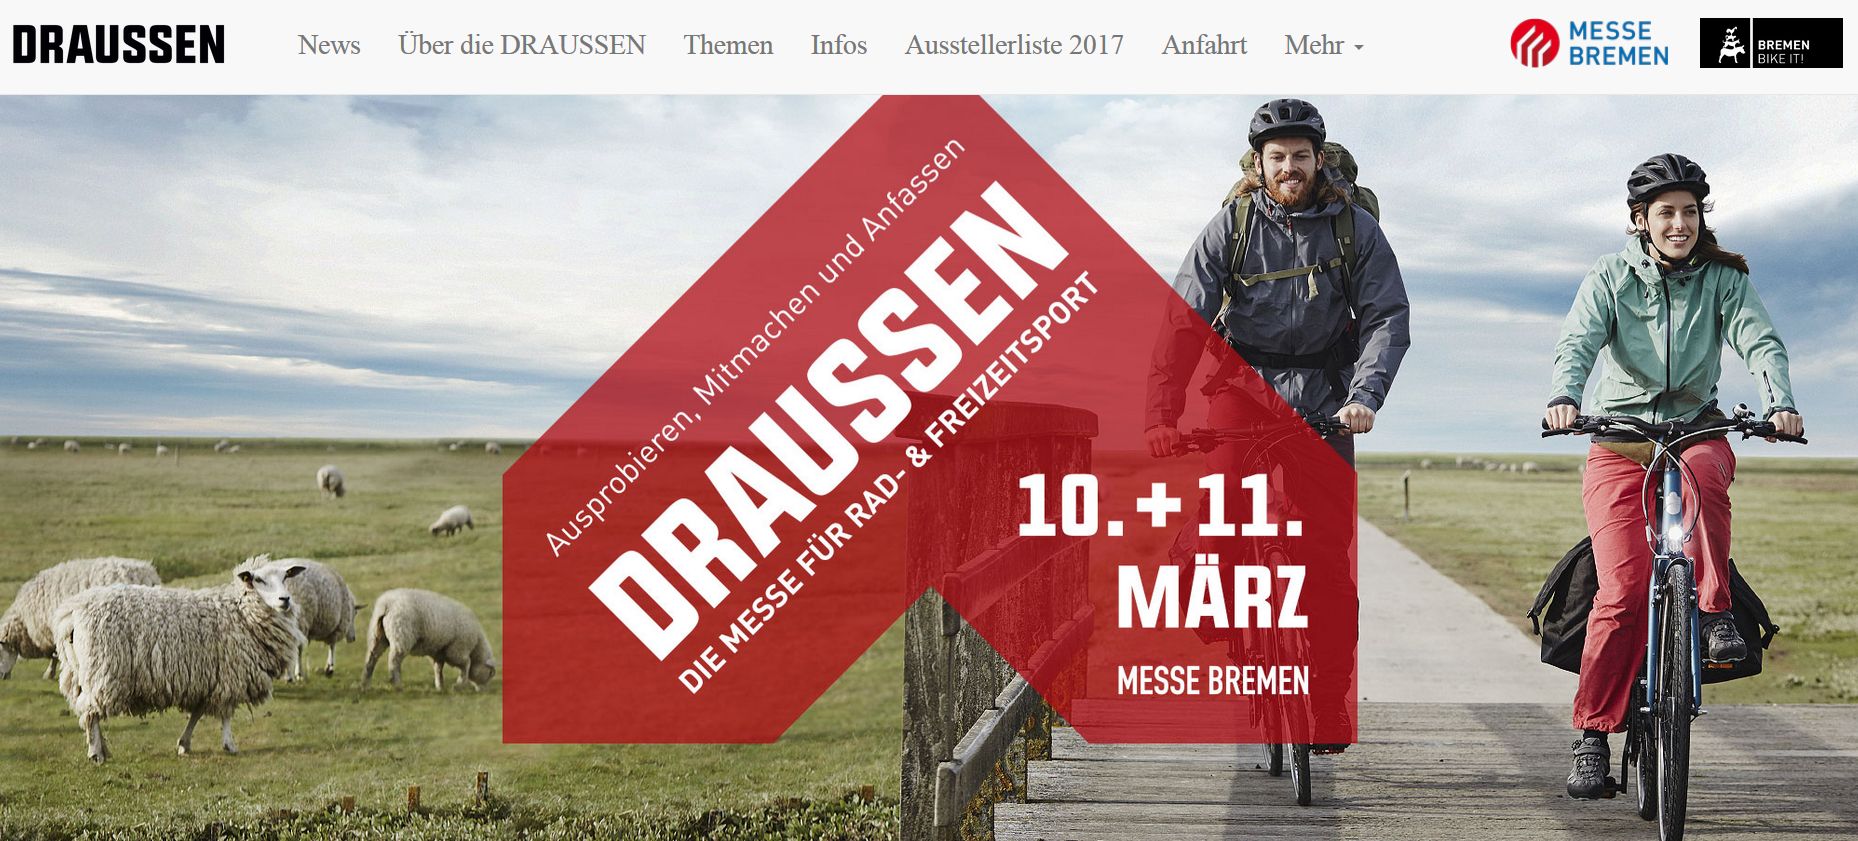 Draussen Bremen - Fahrradmesse 2018